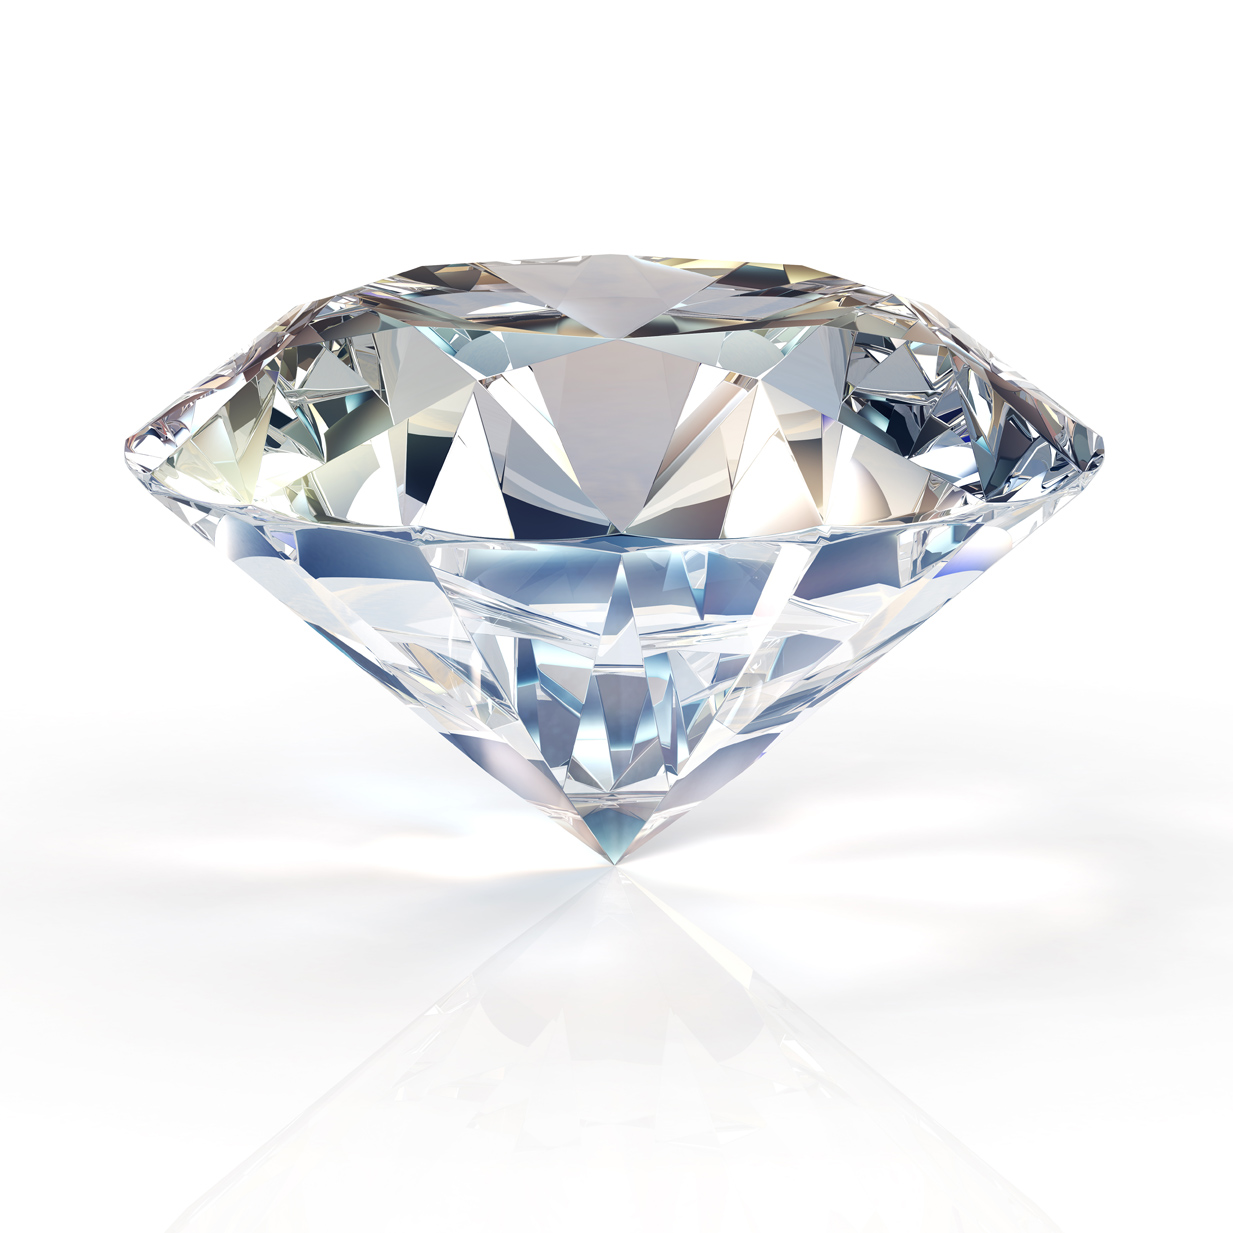 Comprare o vendere diamanti finanziari, un ritorno d’investimento sicuro